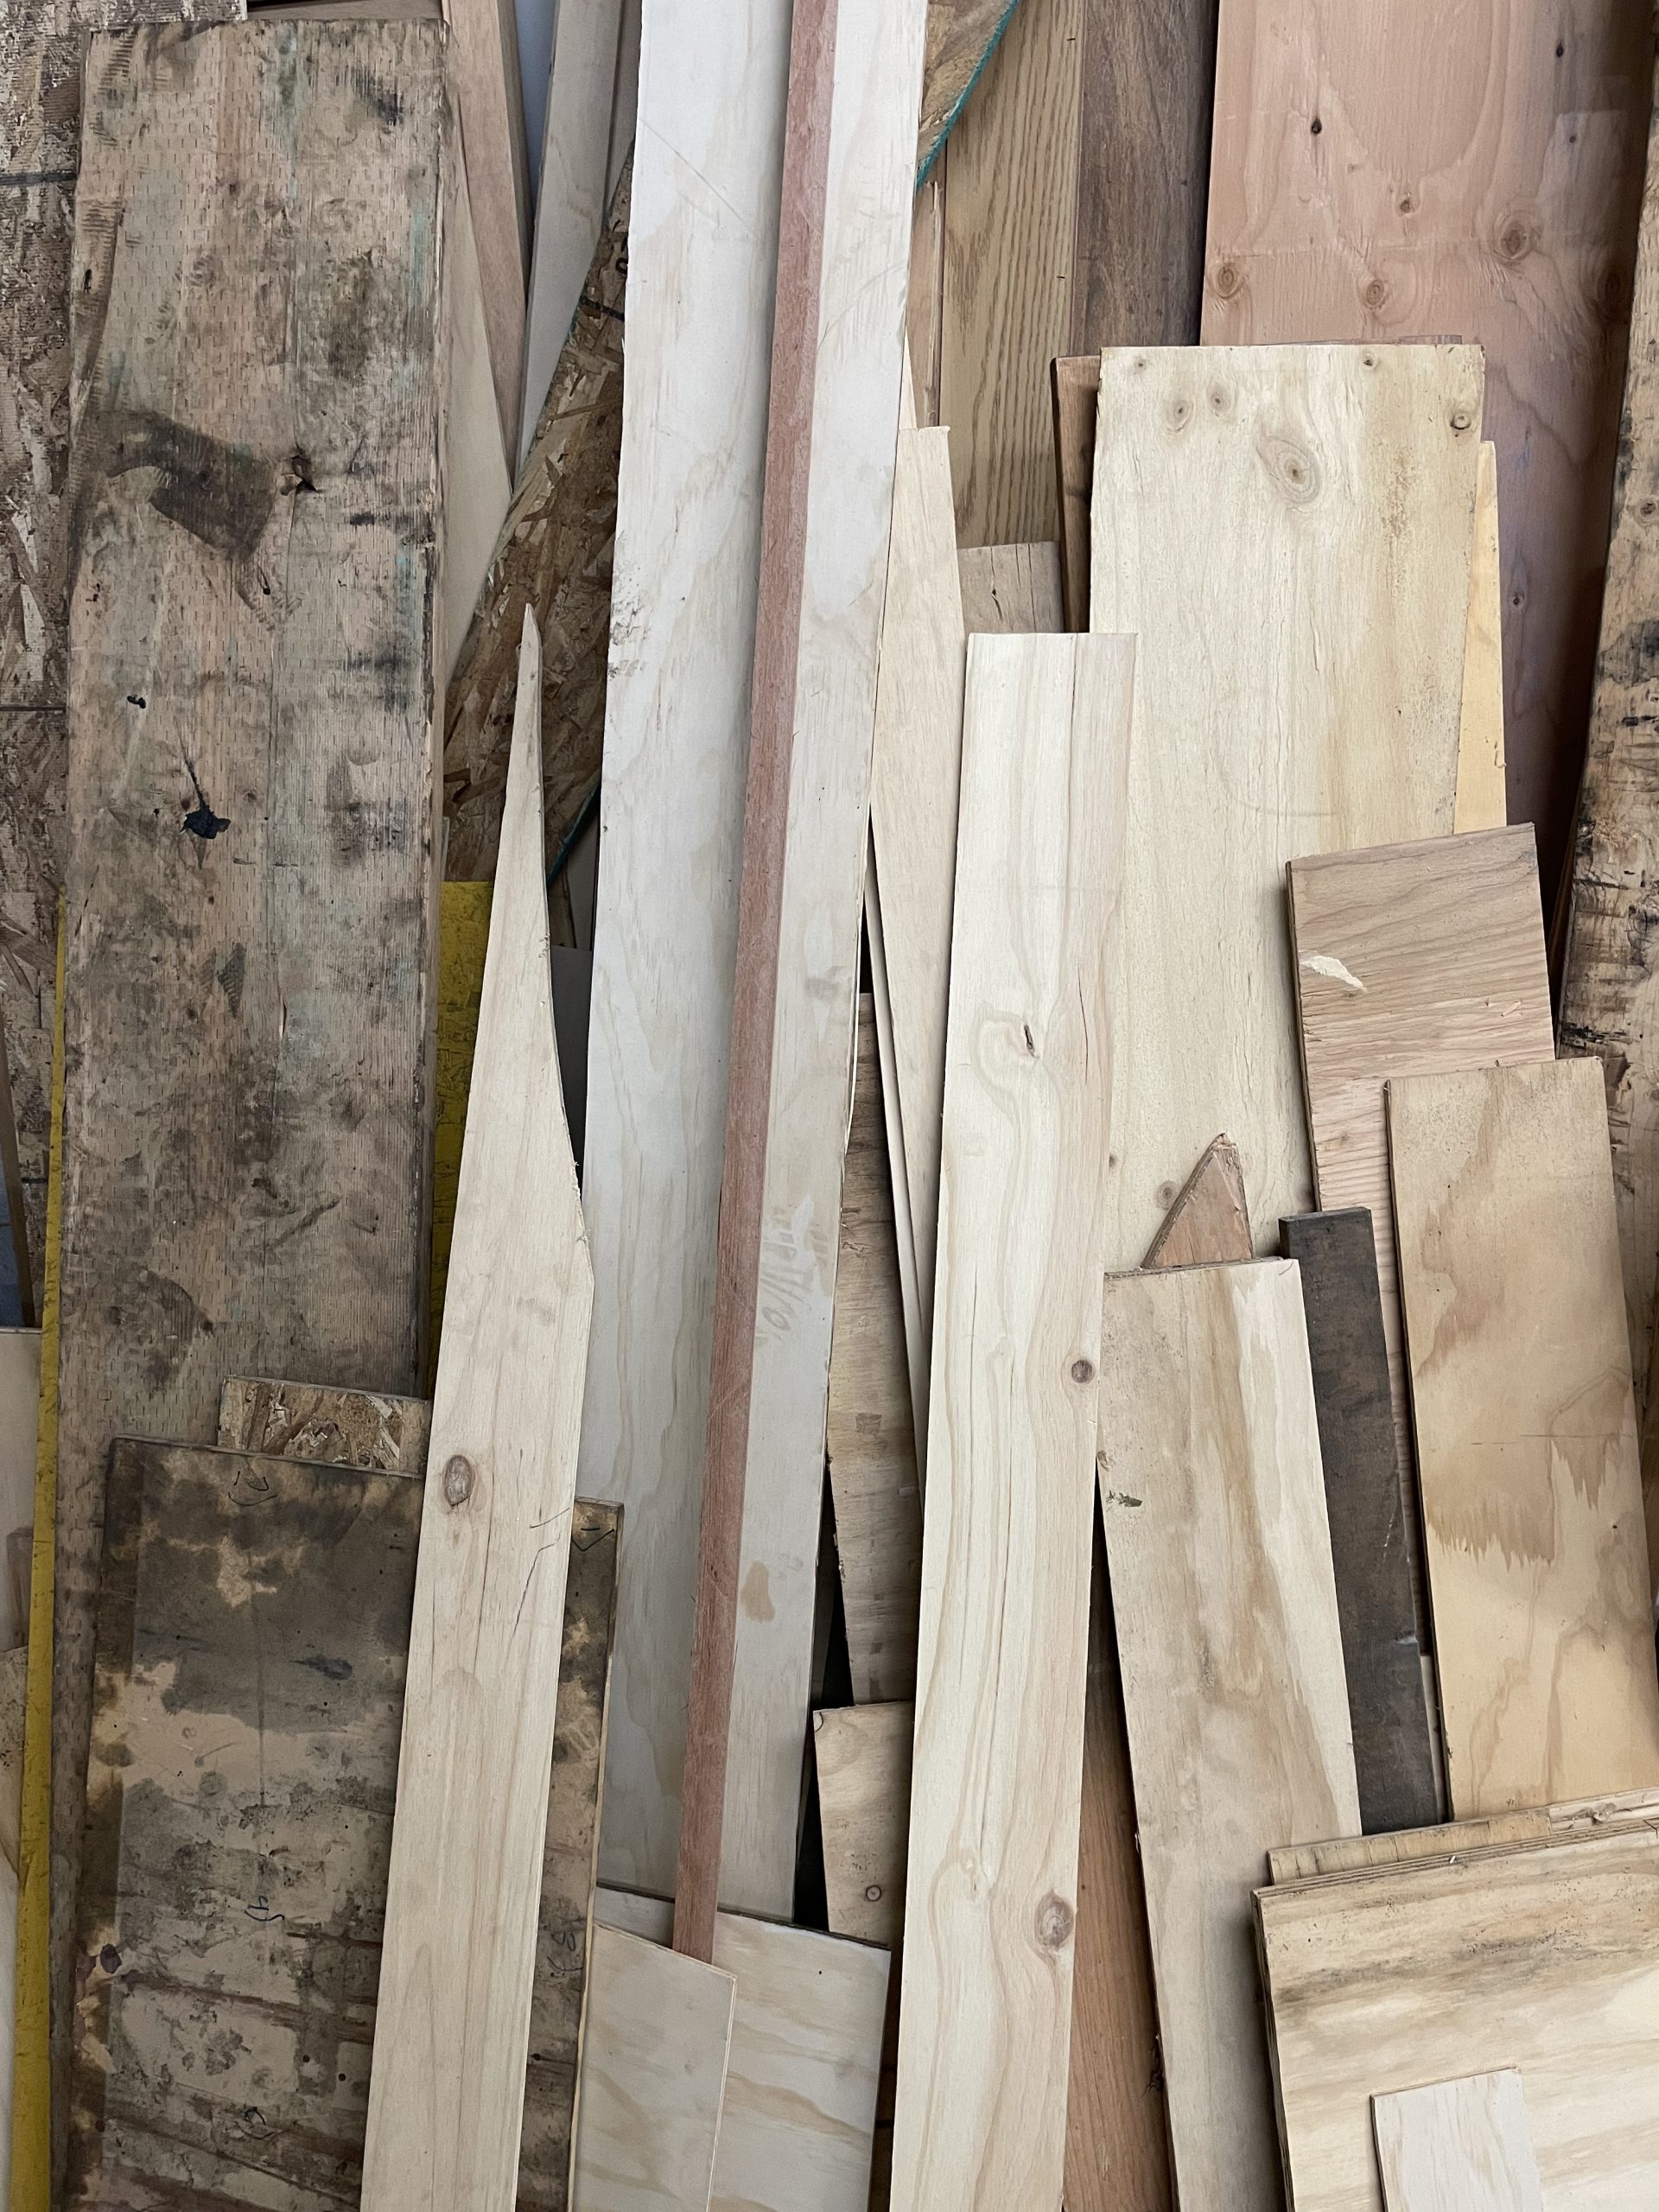 Woodworking Shop Scraps